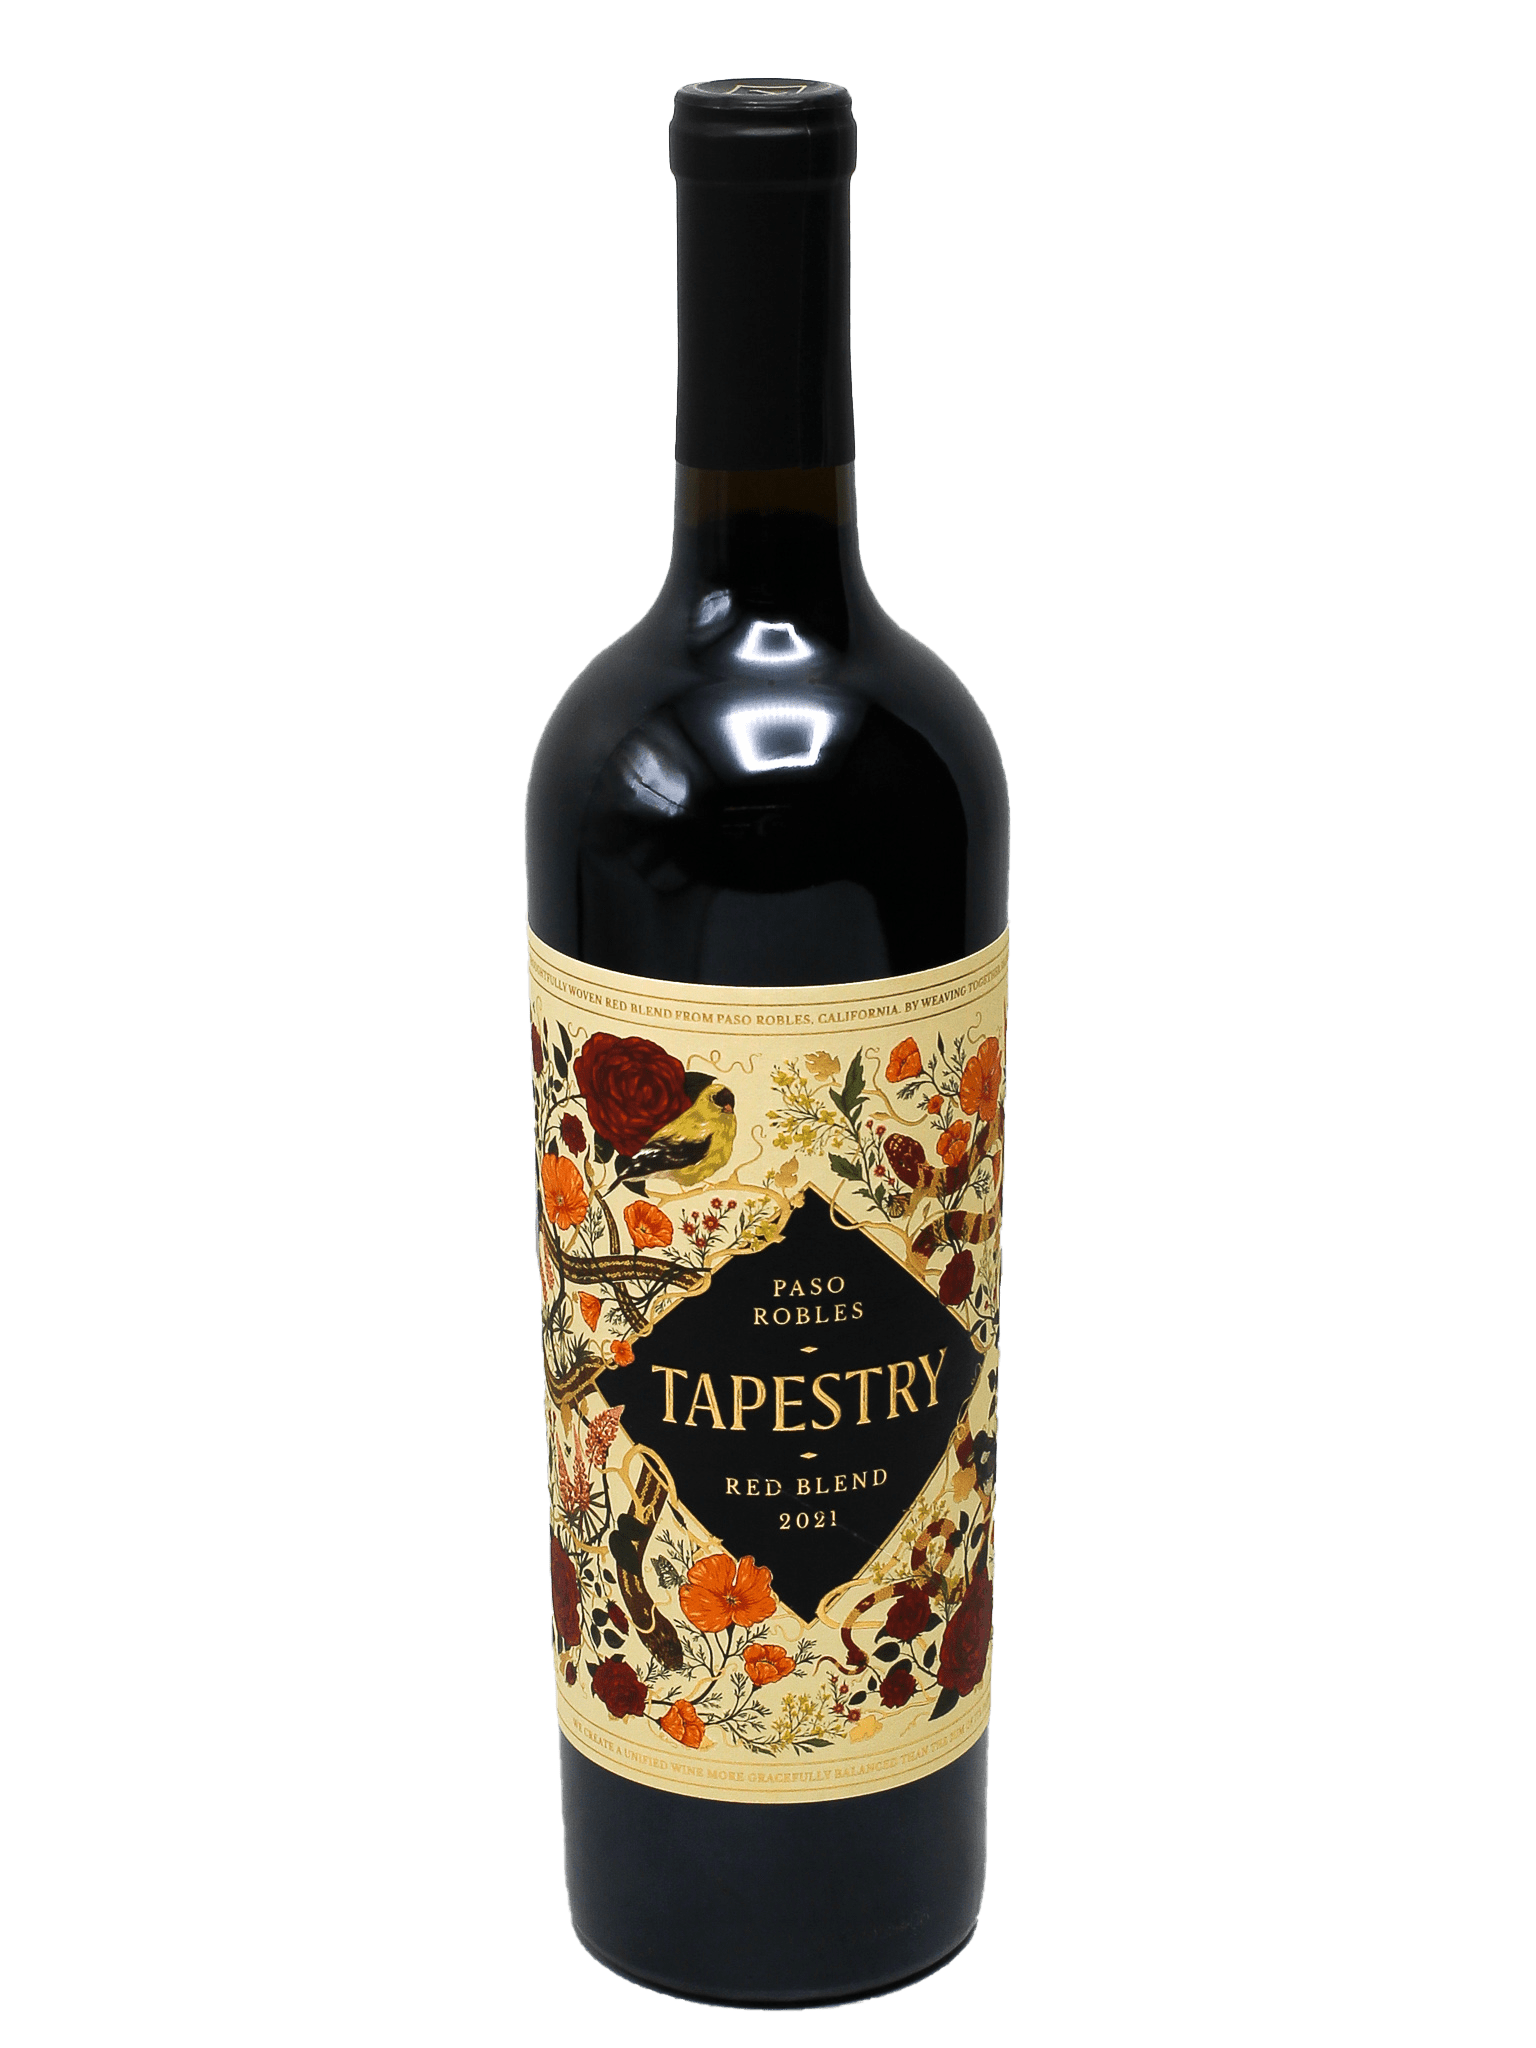 – Blend Red Barn Tapestry Bottle 2021